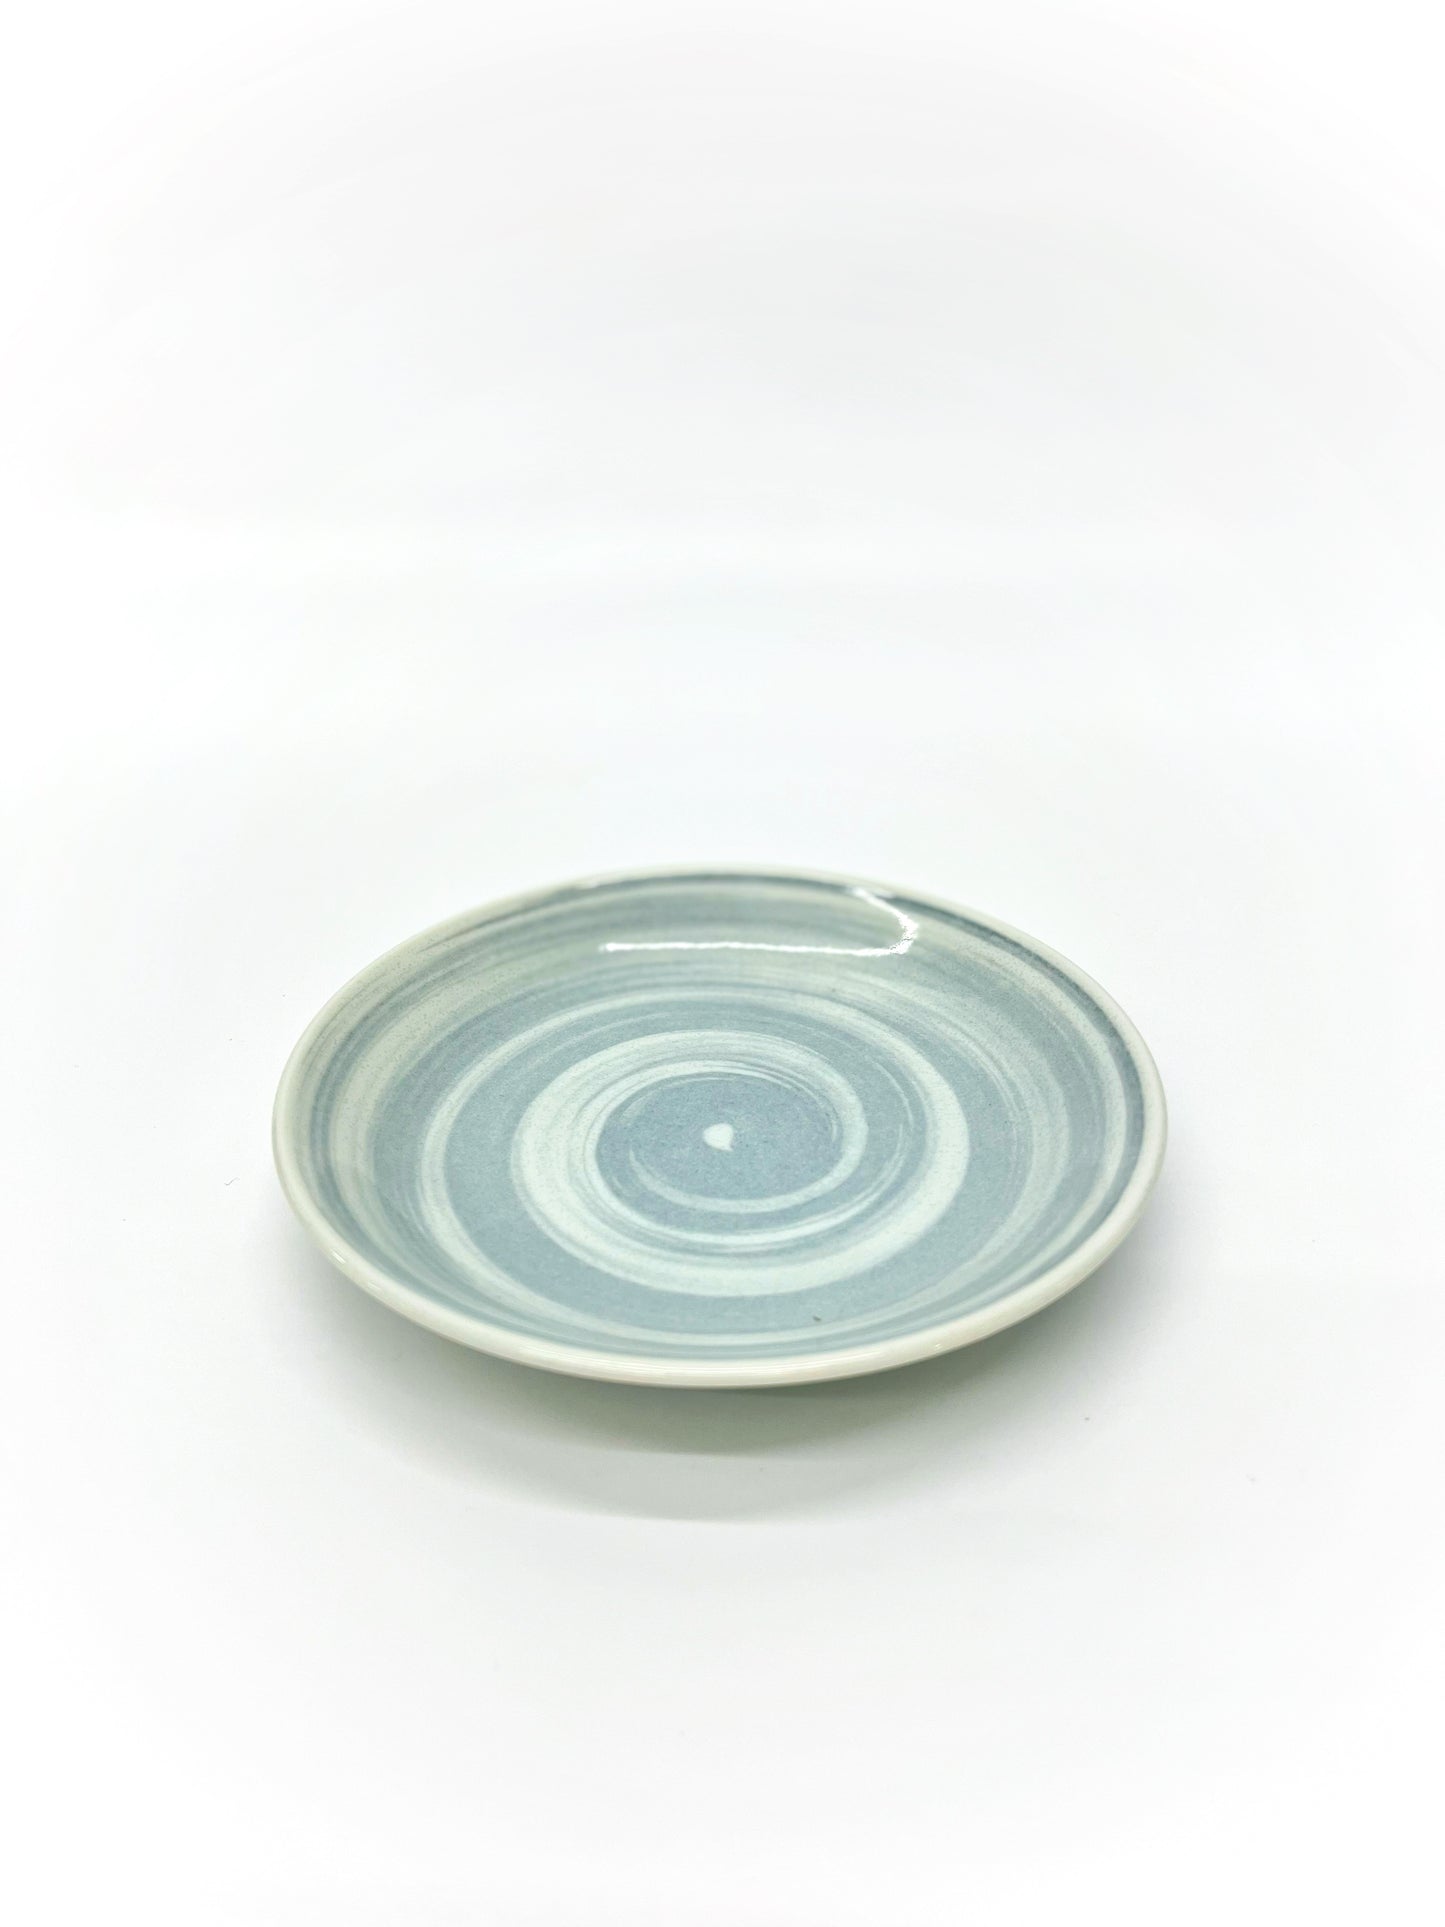 美濃燒毛筆繪畫小碟 | Grey Brushstroke Mino Ware Small Plate